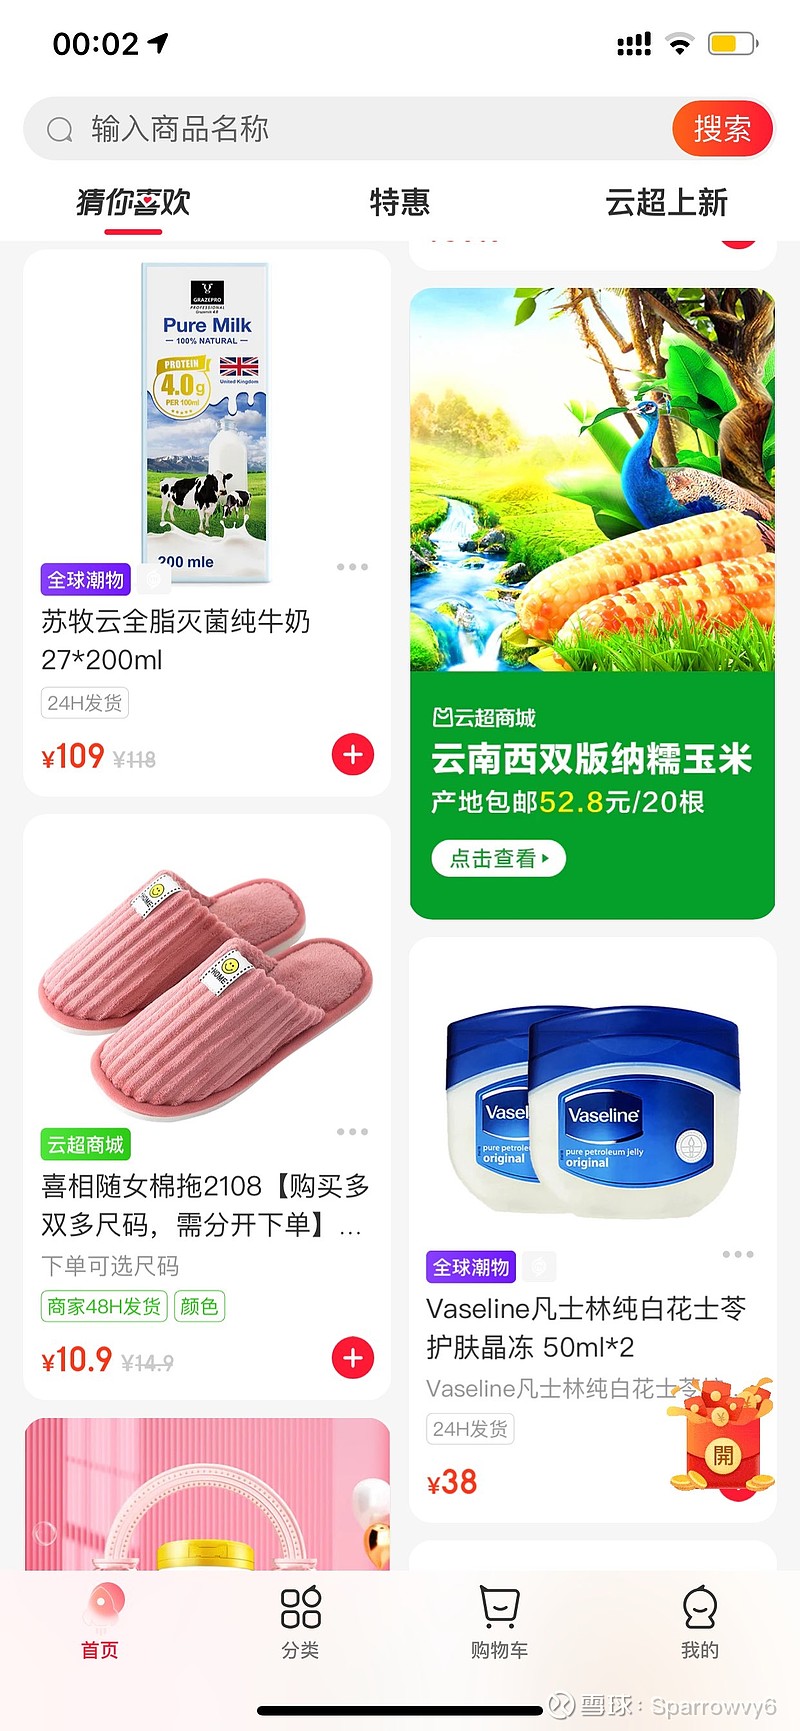 永辉 app的爆品展示还是很不